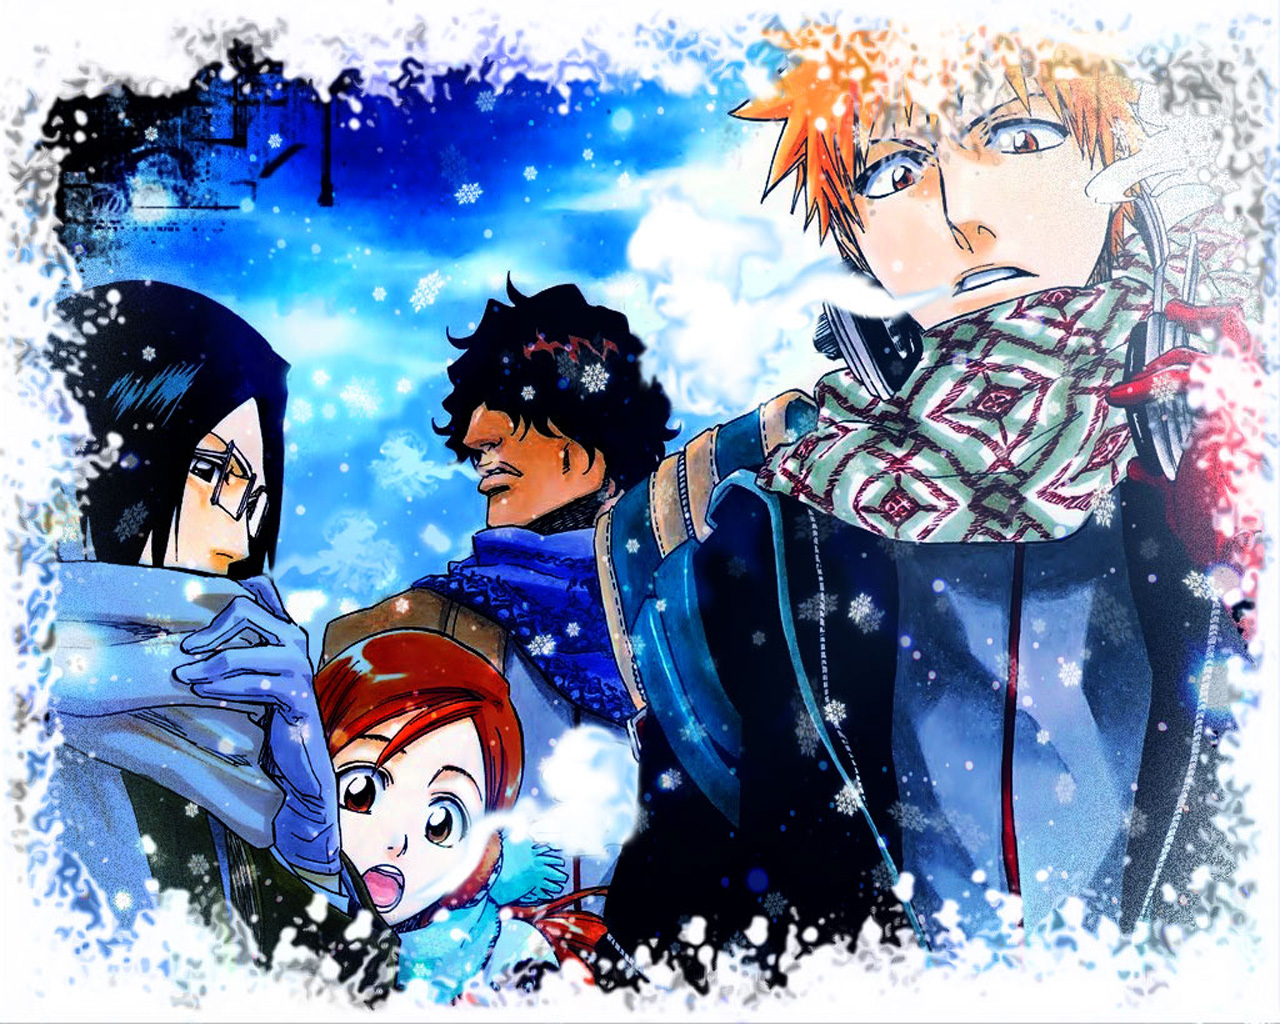 Free download wallpaper Anime, Bleach, Ichigo Kurosaki, Orihime Inoue, Uryu Ishida, Yasutora Sado on your PC desktop